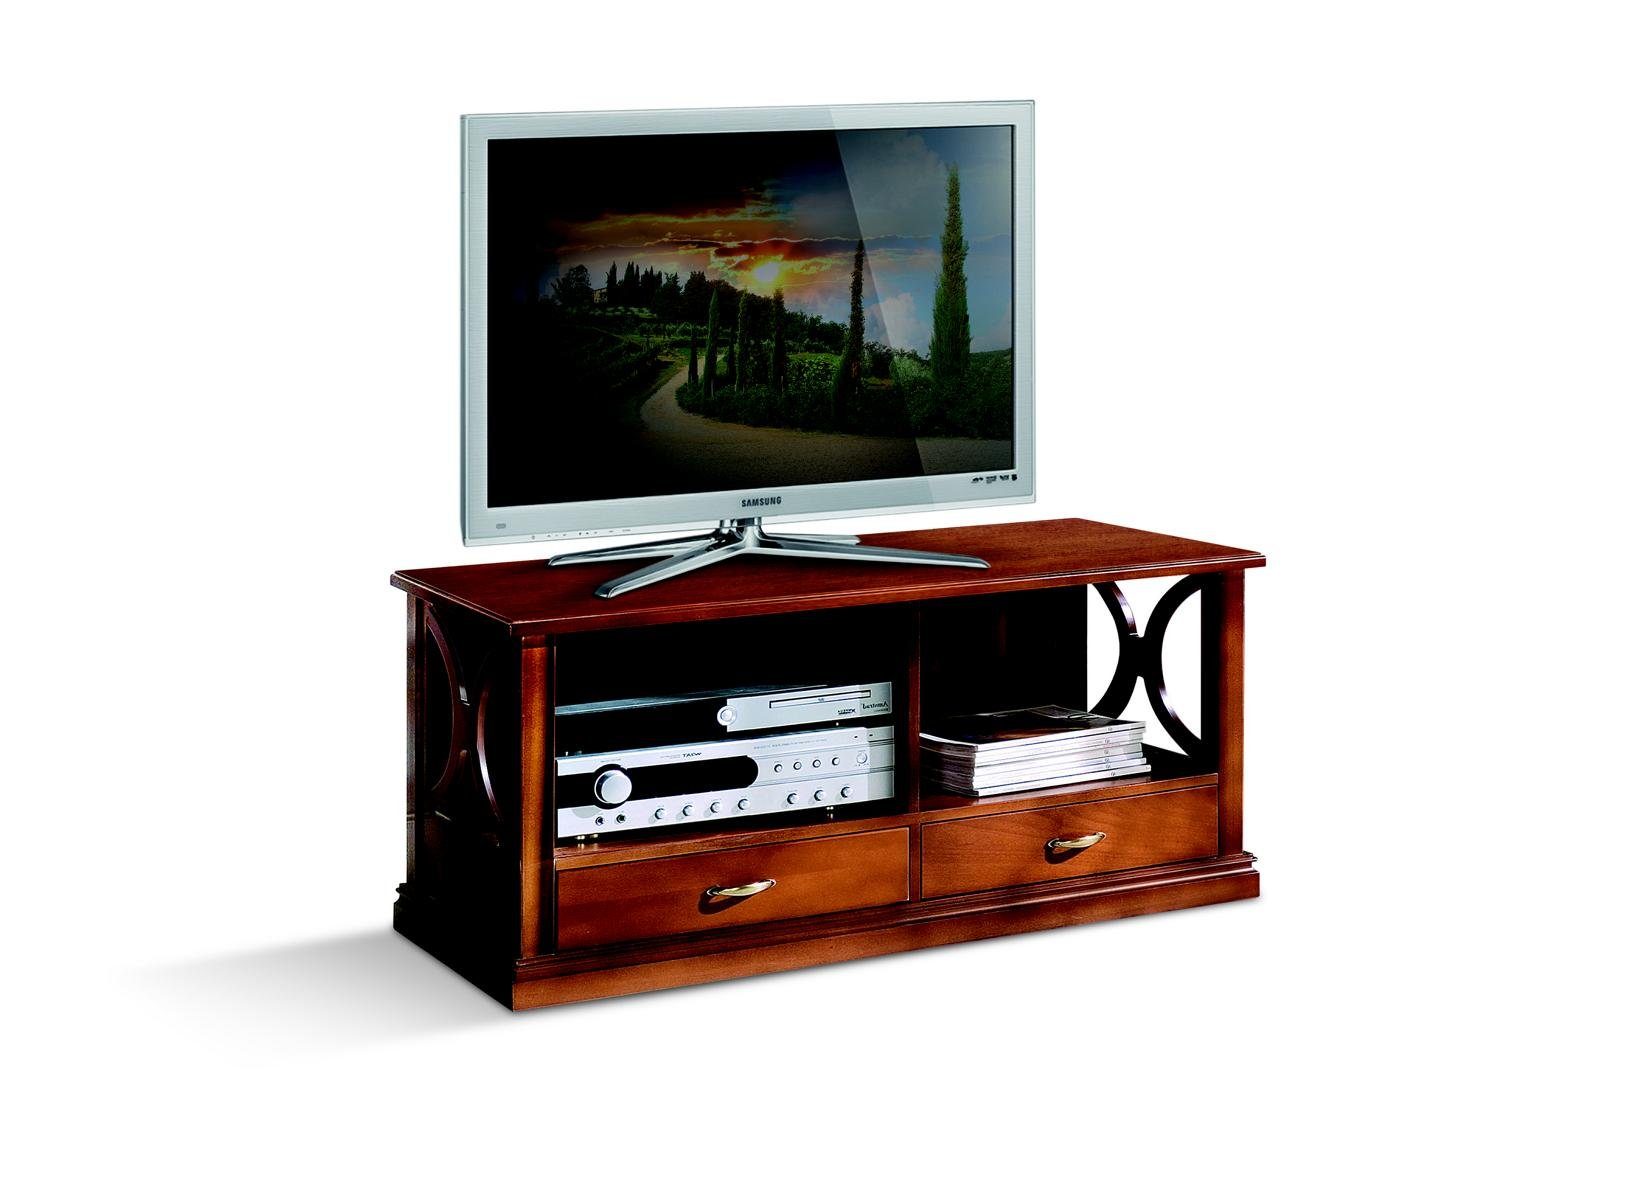 JVmoebel TV-Schrank Luxus Sideboard tv Schrank rtv Italienische Möbel Wohnzimmer Holz Barock Stil